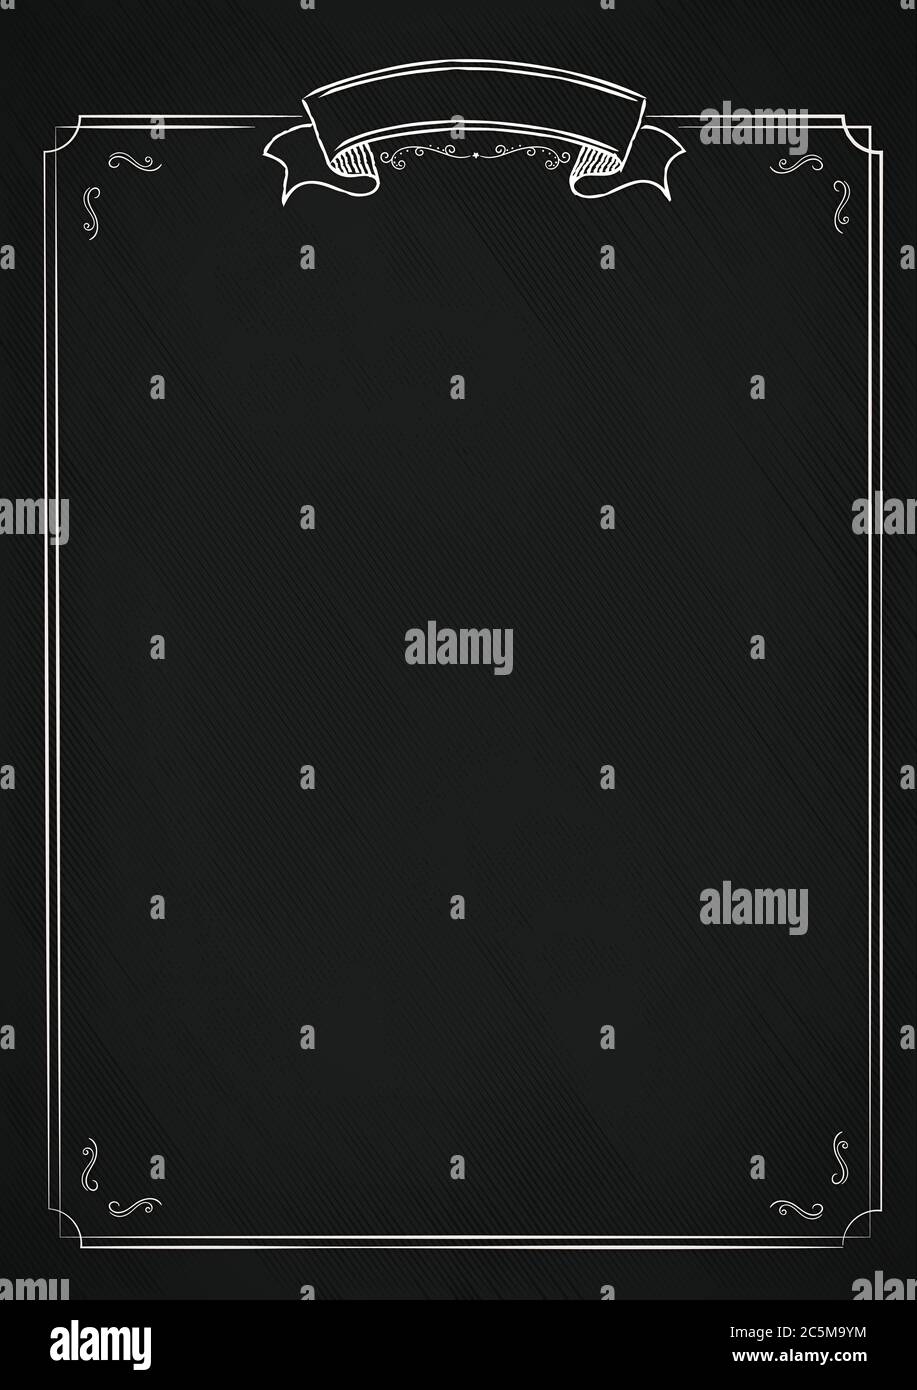 Die Retro-Menü leer schwarze Tafel texturierten Hintergrund mit klassischen ornamentalen Rand - A4 Größe vertikalen Café-Menü Stock Vektor